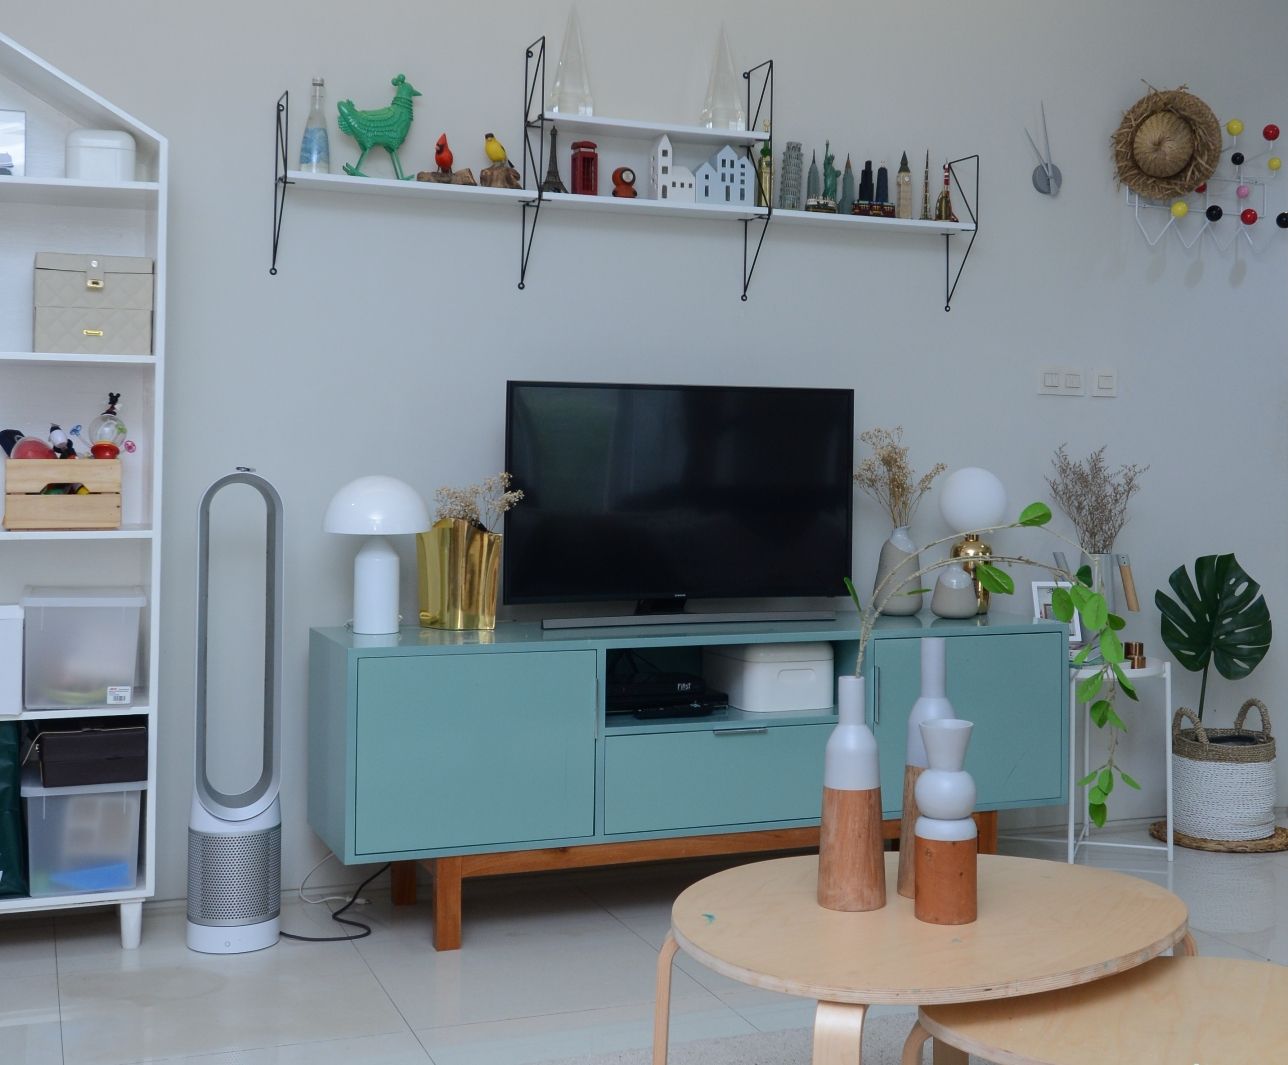 Tak hanya dapur, kabint tv di ruang keluarga juga berwarna hijau mint